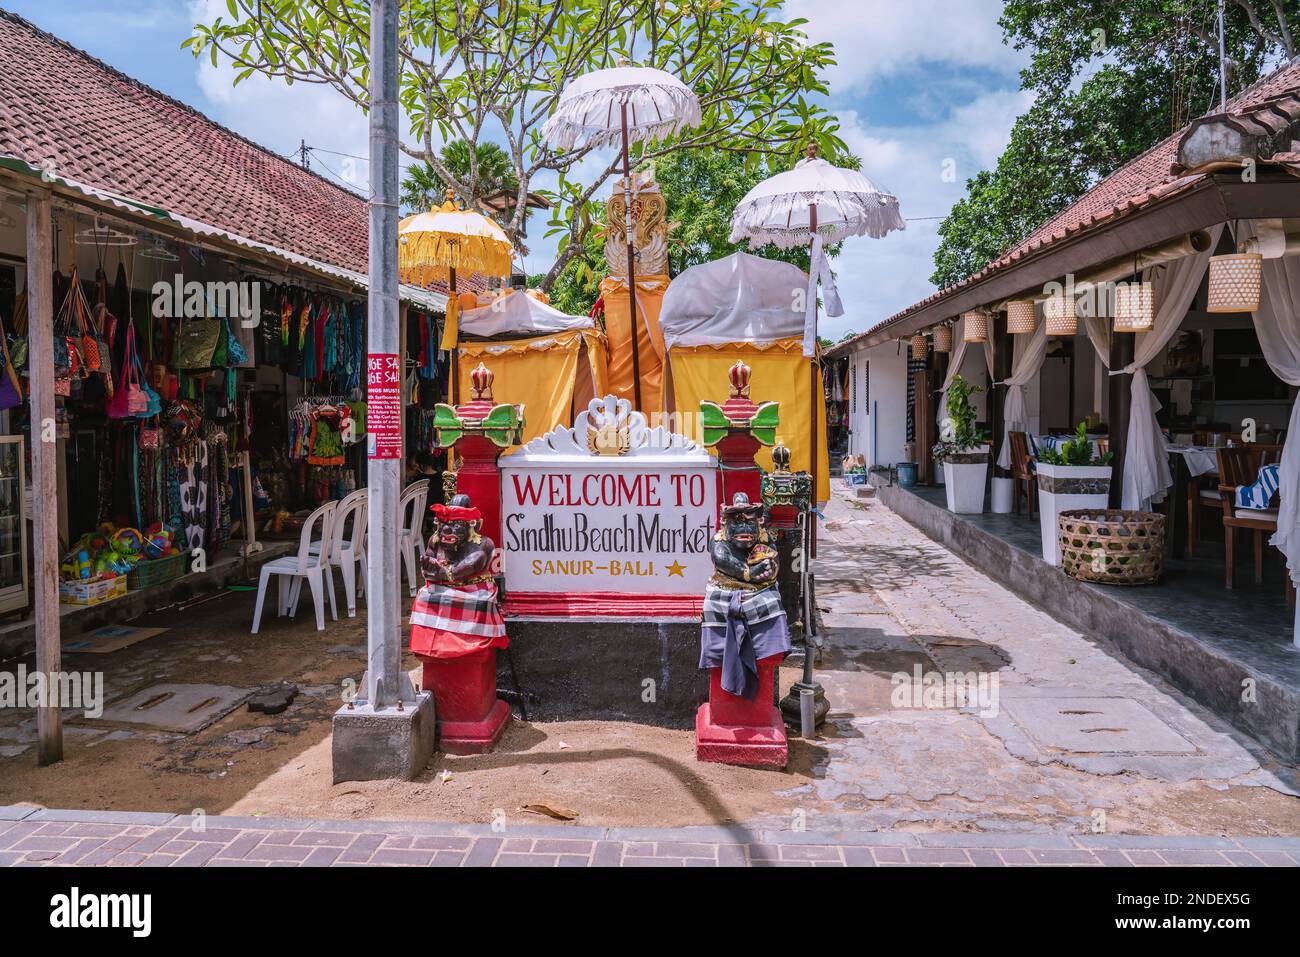 Benvenuti al mercato sulla spiaggia di Sindhu al Sanur Bali Message al punto d'ingresso, saluto decorato da due statue di guardia demoniaca in stile tradizionale balinese Foto Stock